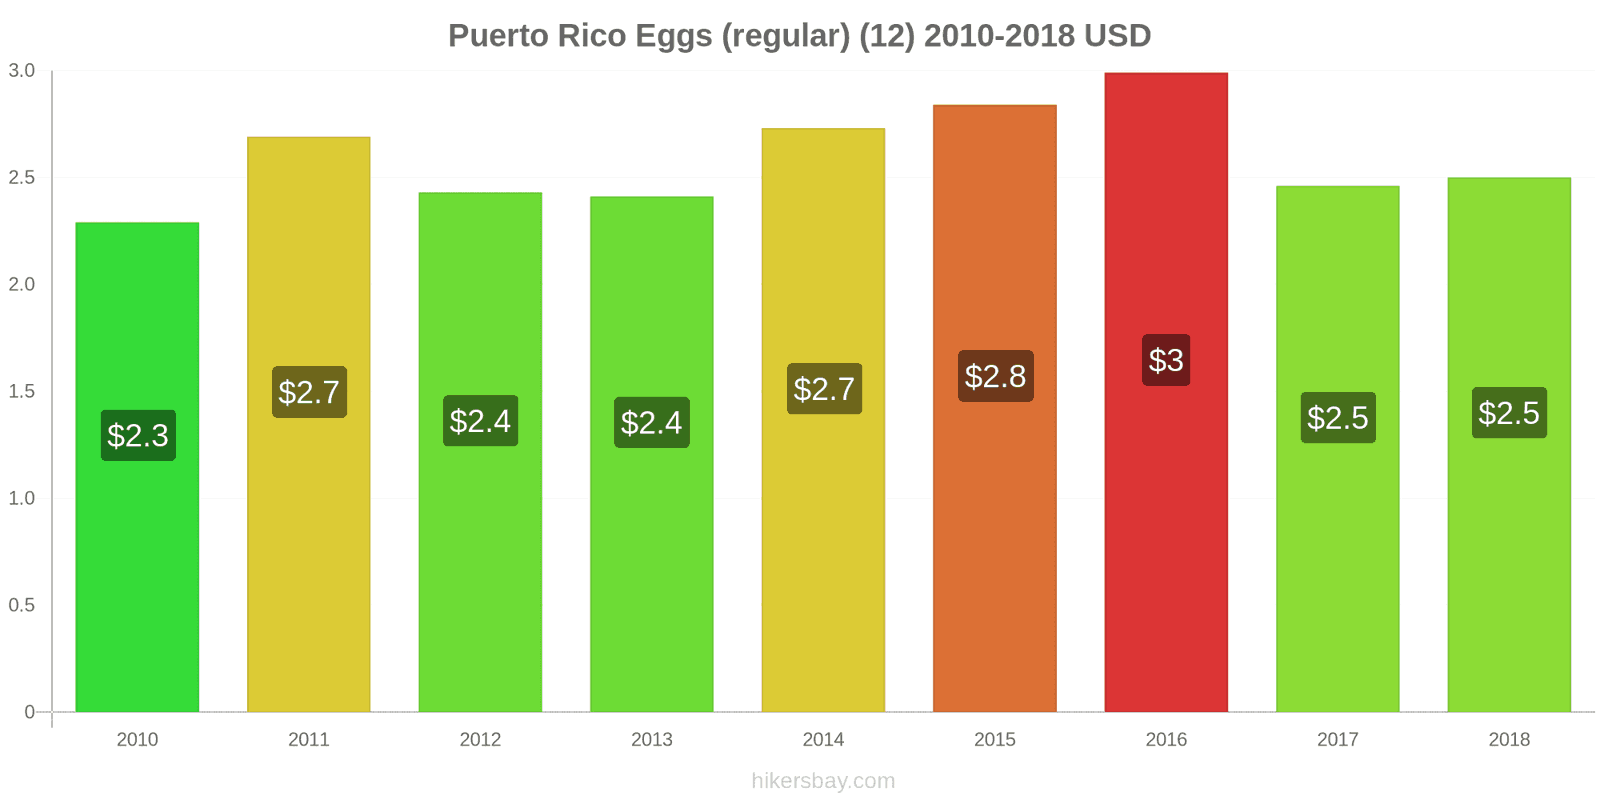 Puerto Rico price changes Eggs (regular) (12) hikersbay.com